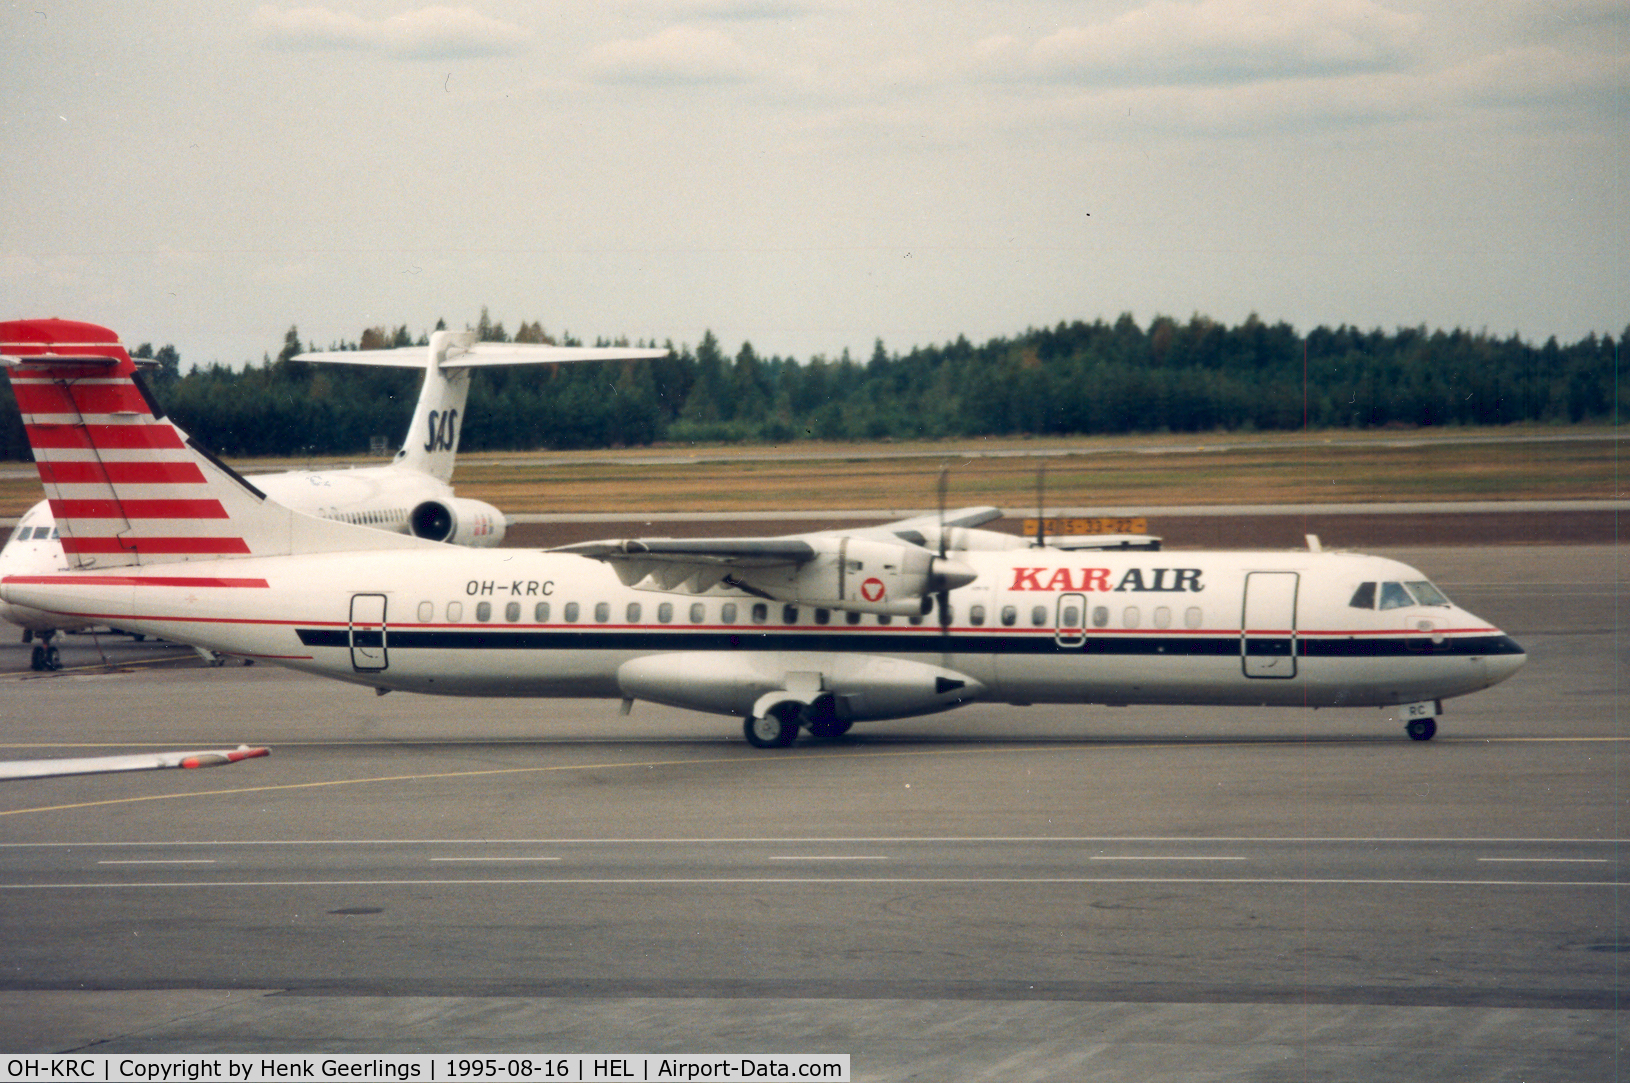 OH-KRC, 1989 ATR 72-201 C/N 145, Karair